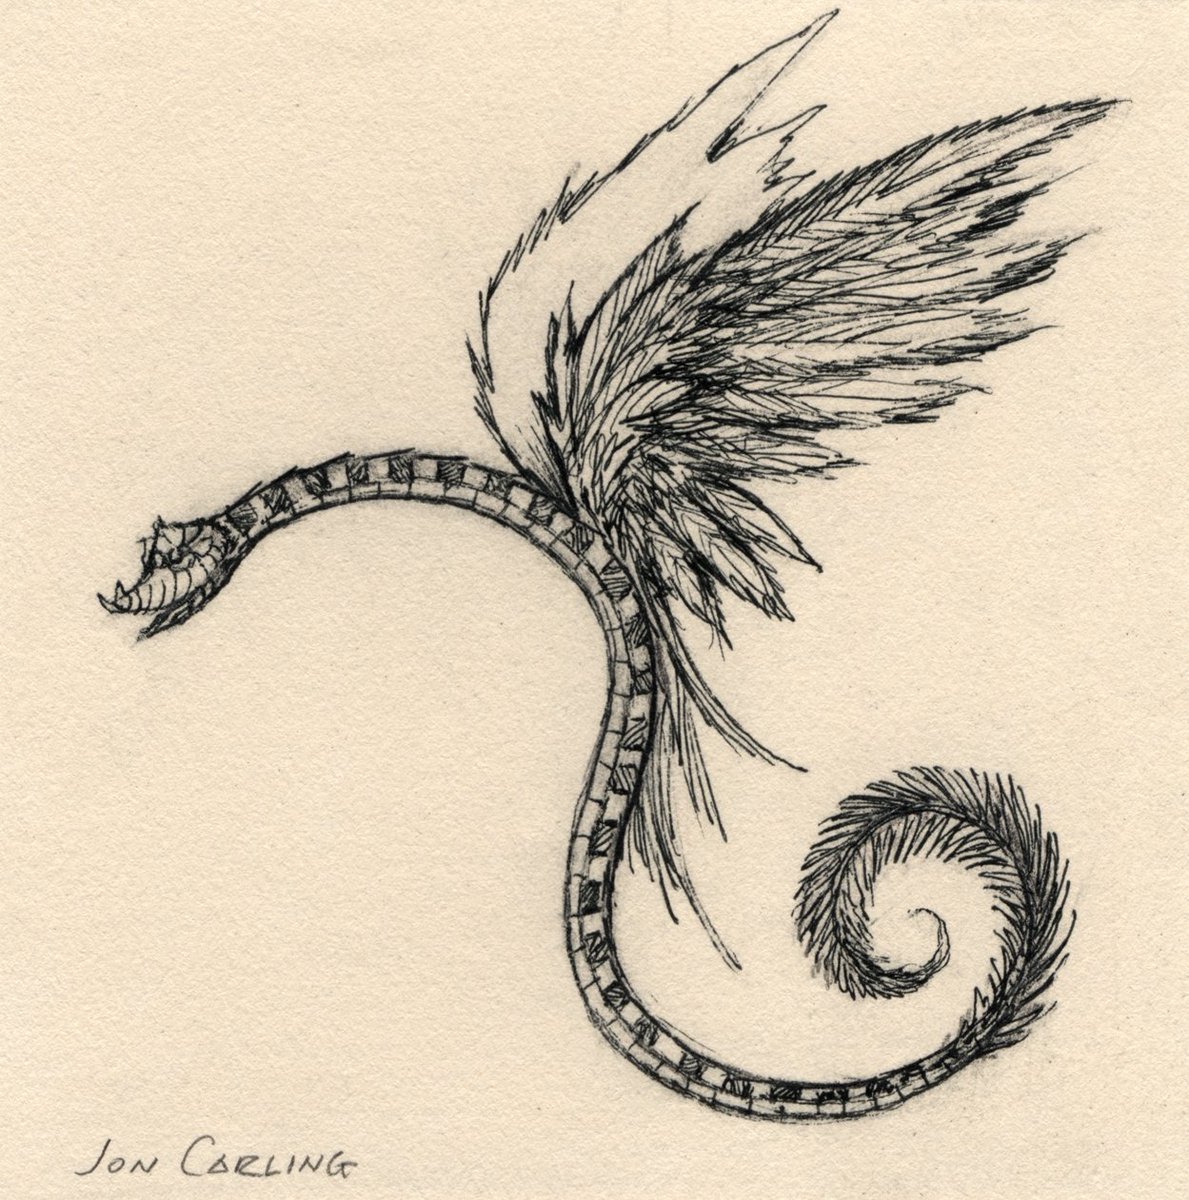 RT @JonCarling: flying snake https://t.co/jVZpbii0vB